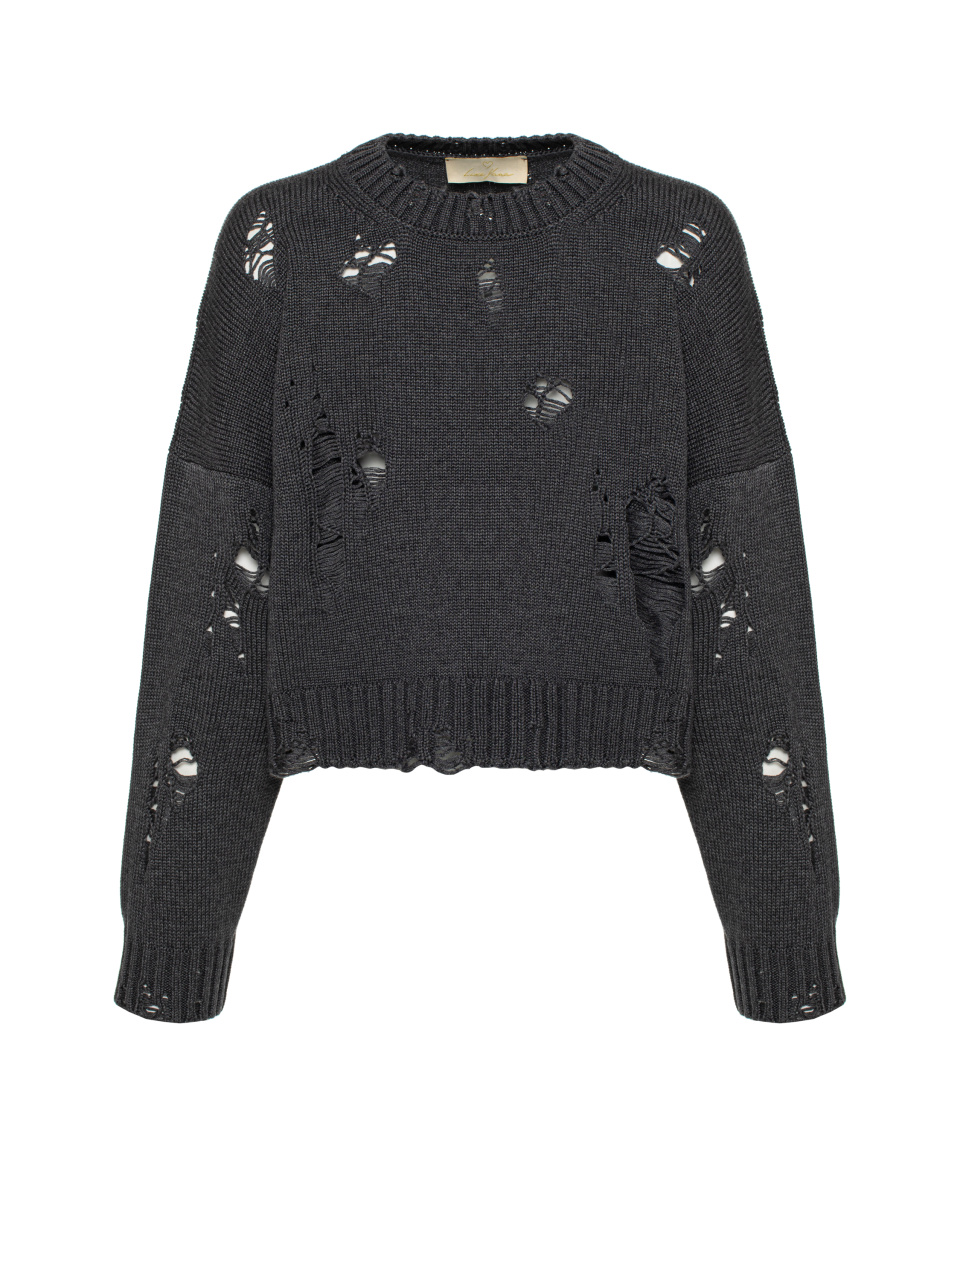 Темно-серый укороченный свитер из хлопка с дырками, 1